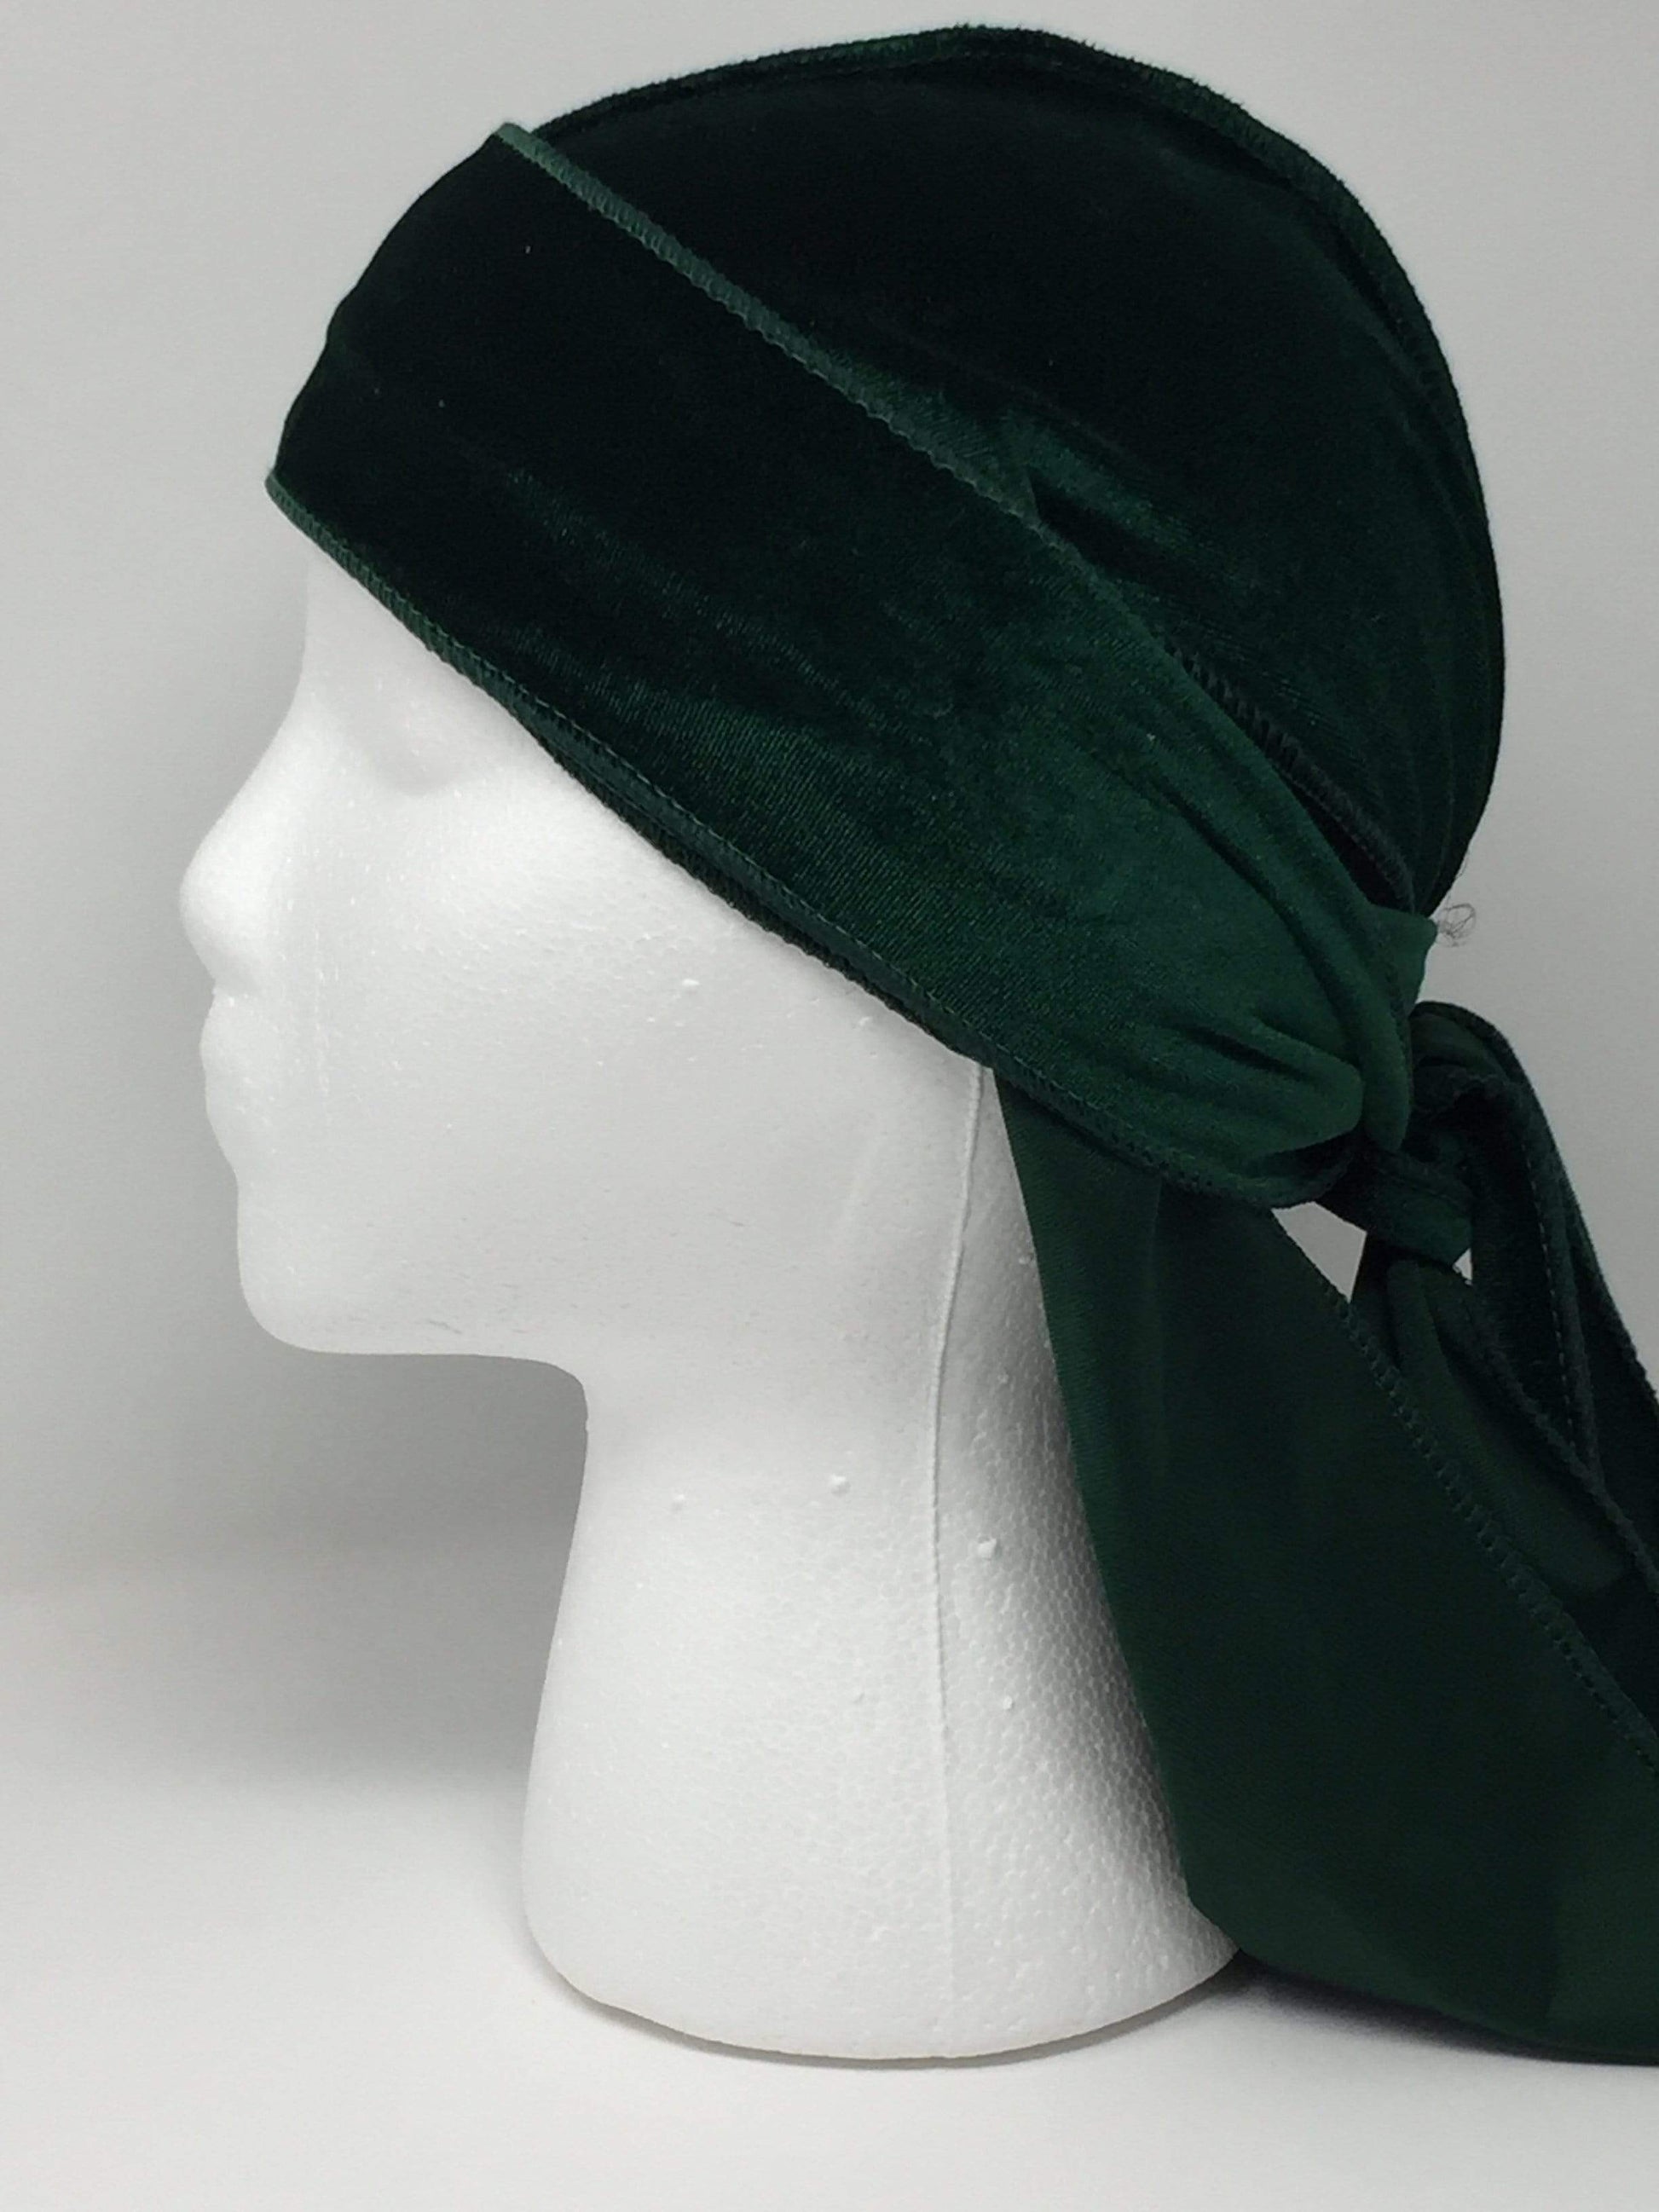 DrippyRags Durags Bonnets Headbands Headwear More Velvet Green Velvet Durag